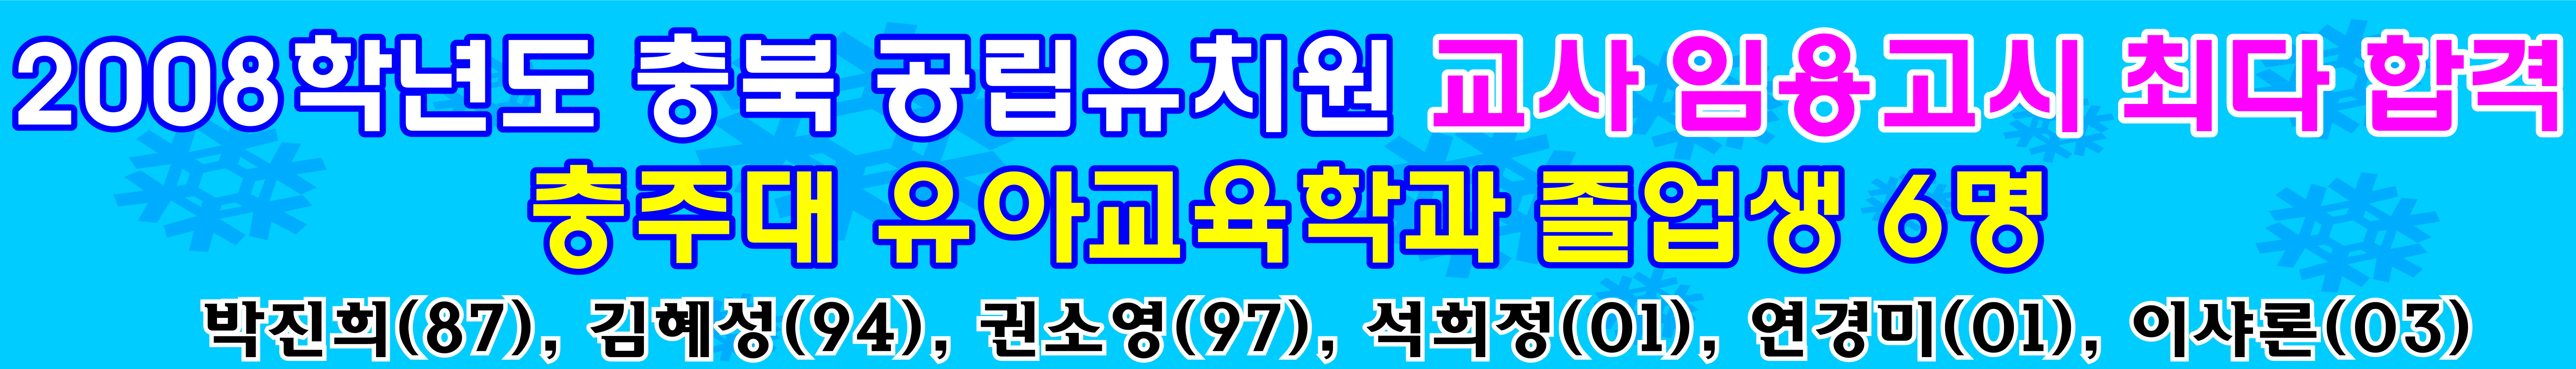 2008년 충북 공립유치원 교사 임용고시 최다 합격